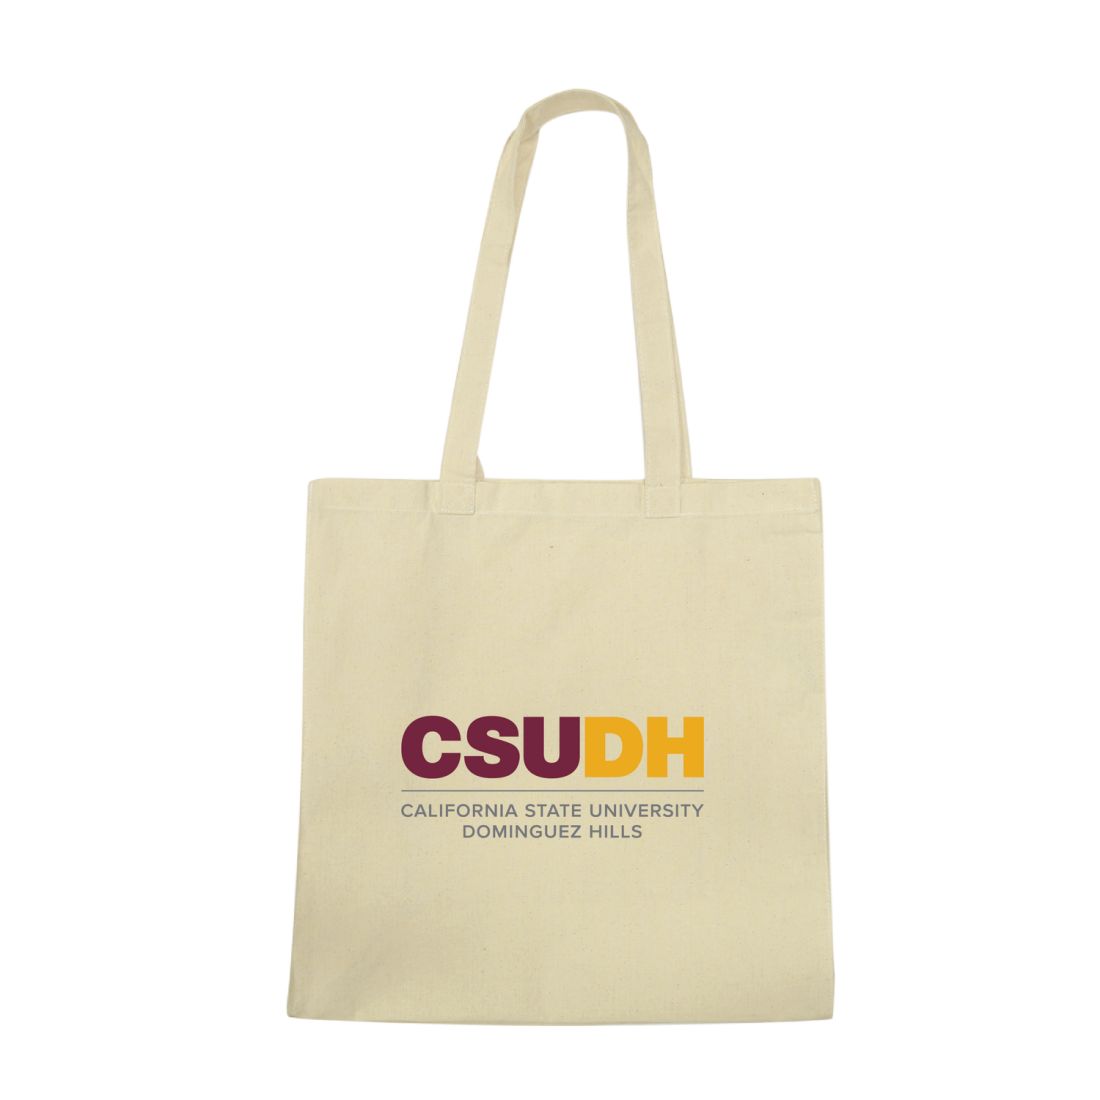 CSUDH California State University Dominguez Hills Toros Institutional Tote Bag